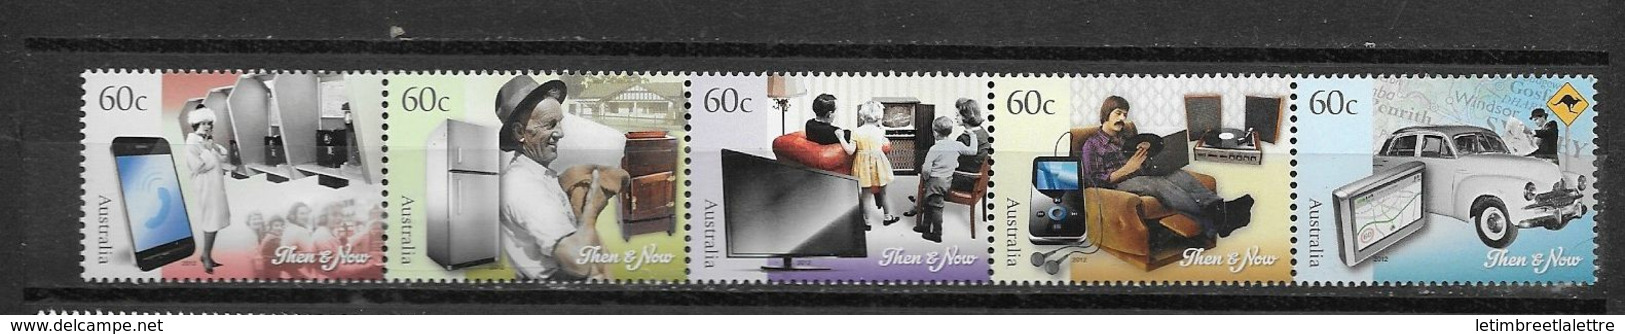 Australie N 3549 à 3553**                                                                                 ** - Mint Stamps